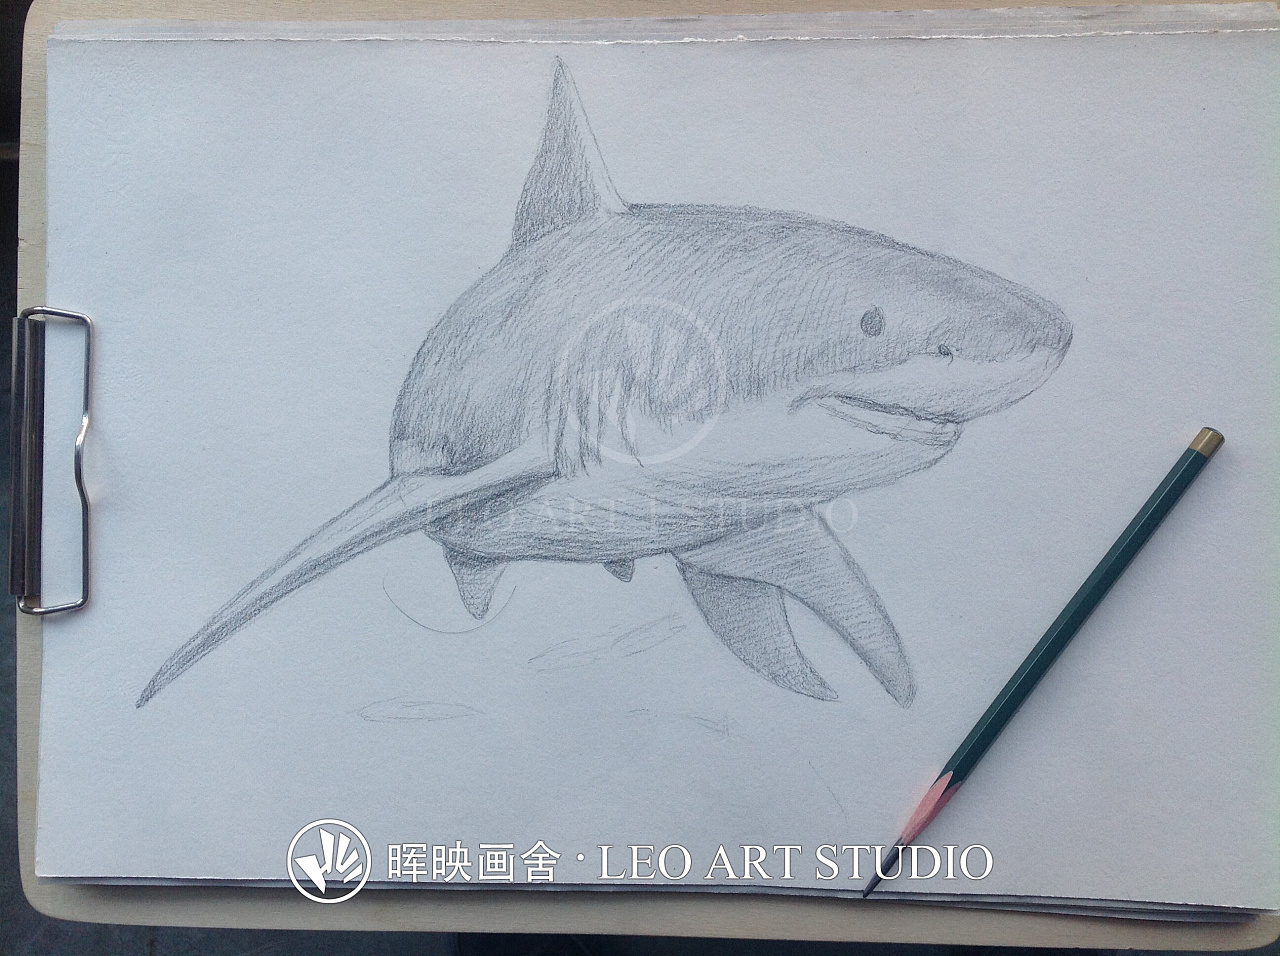 分享一幅素描插画——《大白鲨》的绘制过程